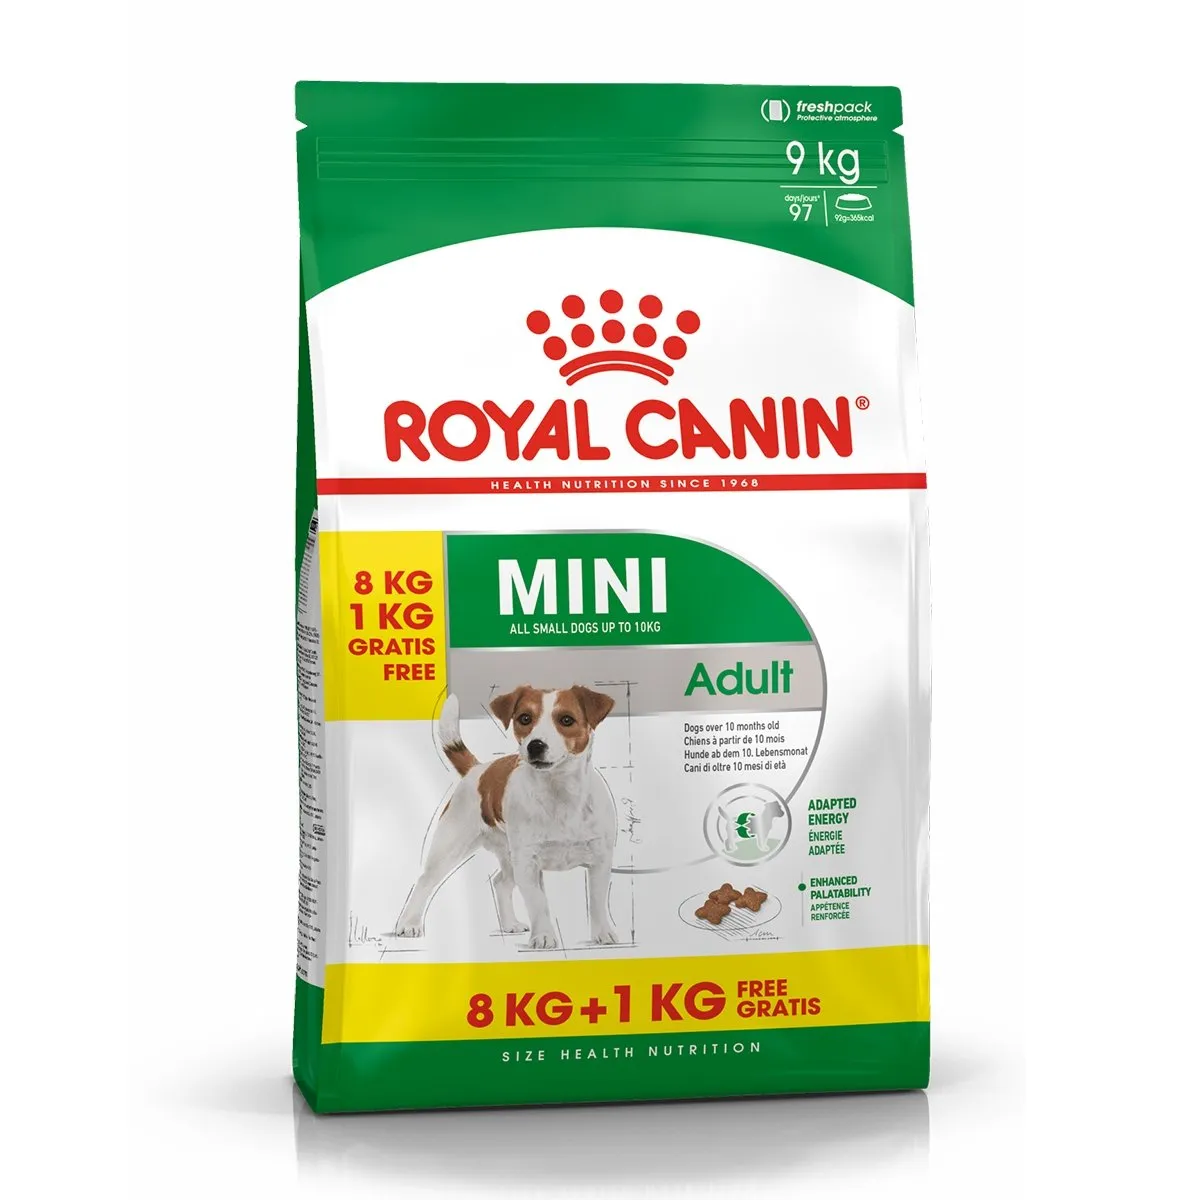 Royal Canin Mini Adult hrana uscata caine, 8 kg + 1 kg